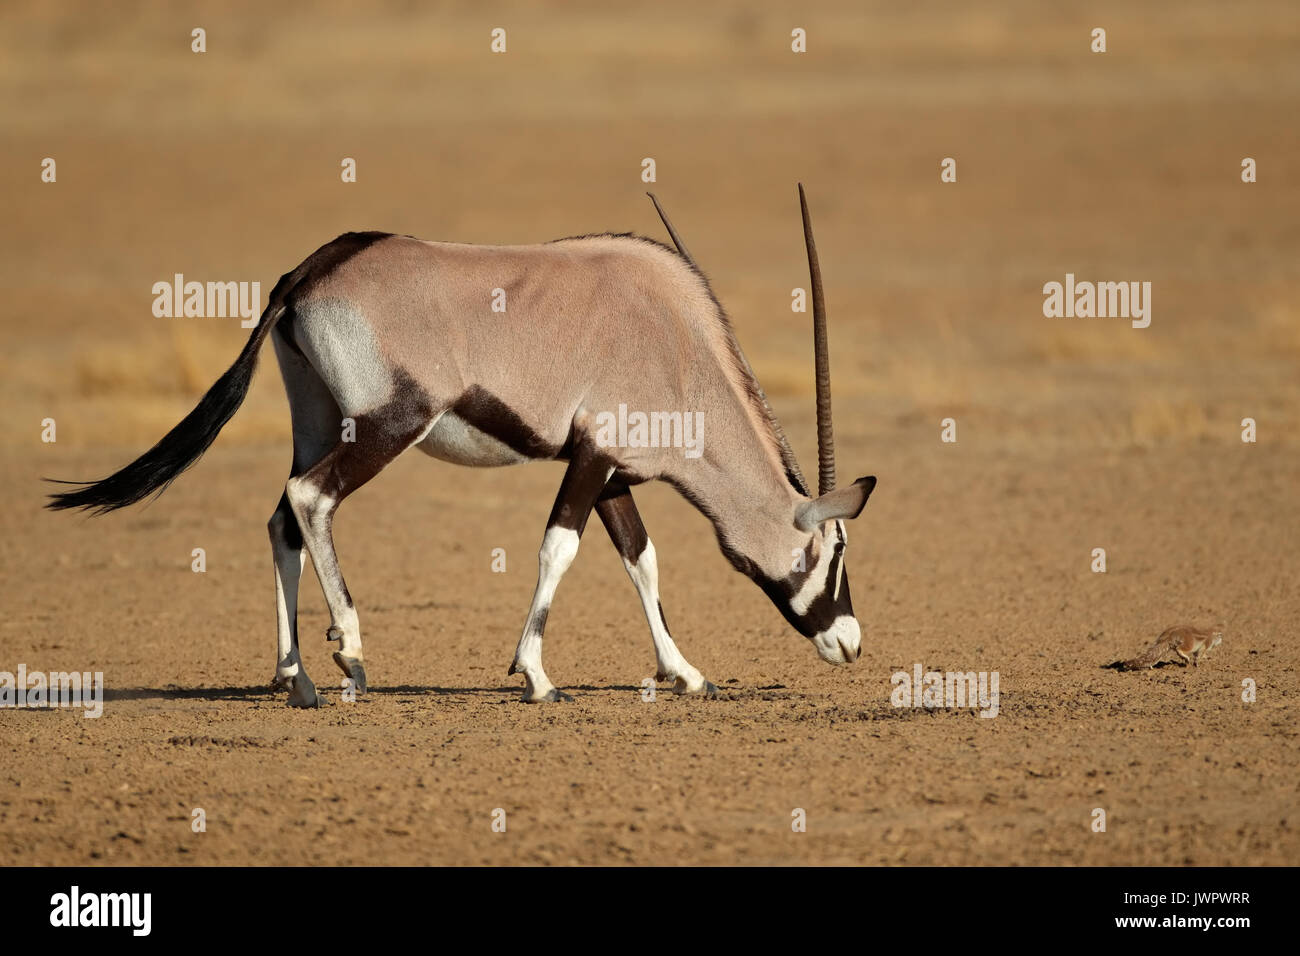 Curieux gemsbok (Oryx gazella) antilope et un écureuil terrestre, désert du Kalahari, Afrique du Sud Banque D'Images